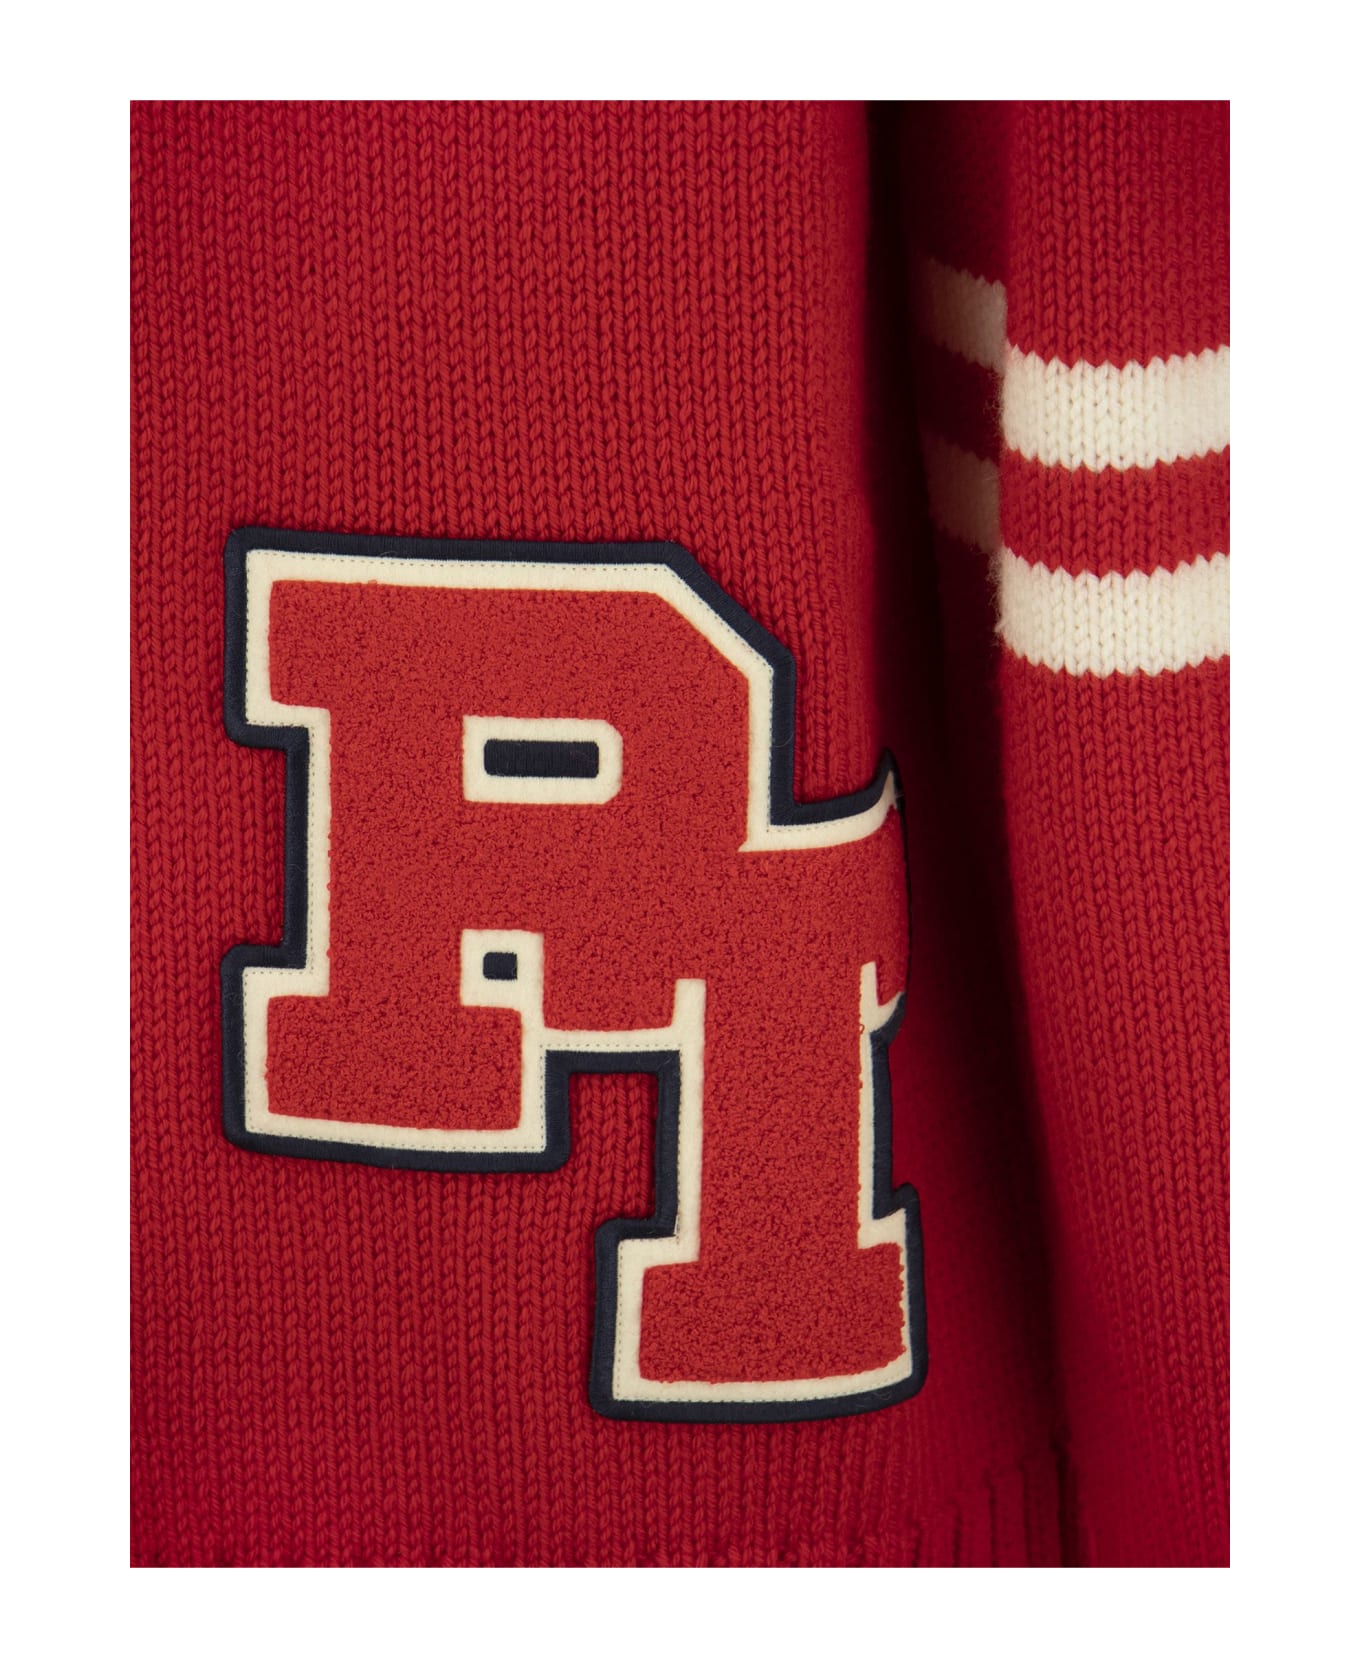 PT Torino Wool Pullover - Red ニットウェア